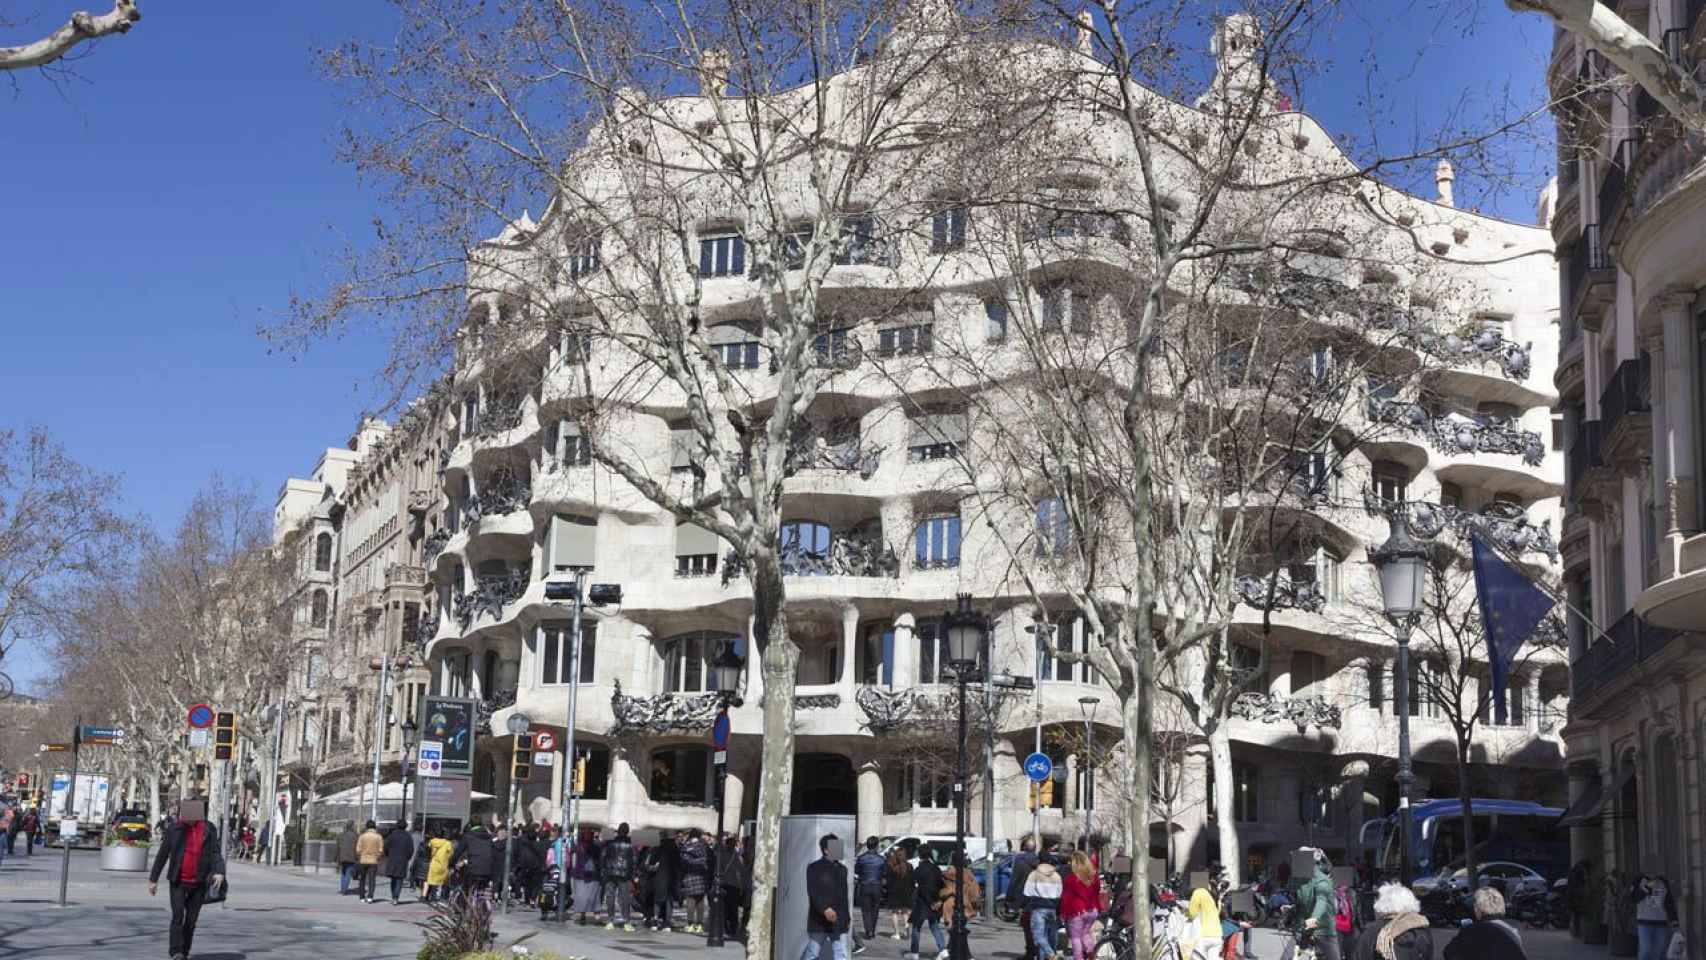 El edificio modernista La Pedrera está ubicado en el Passeig de Gràcia de Barcelona